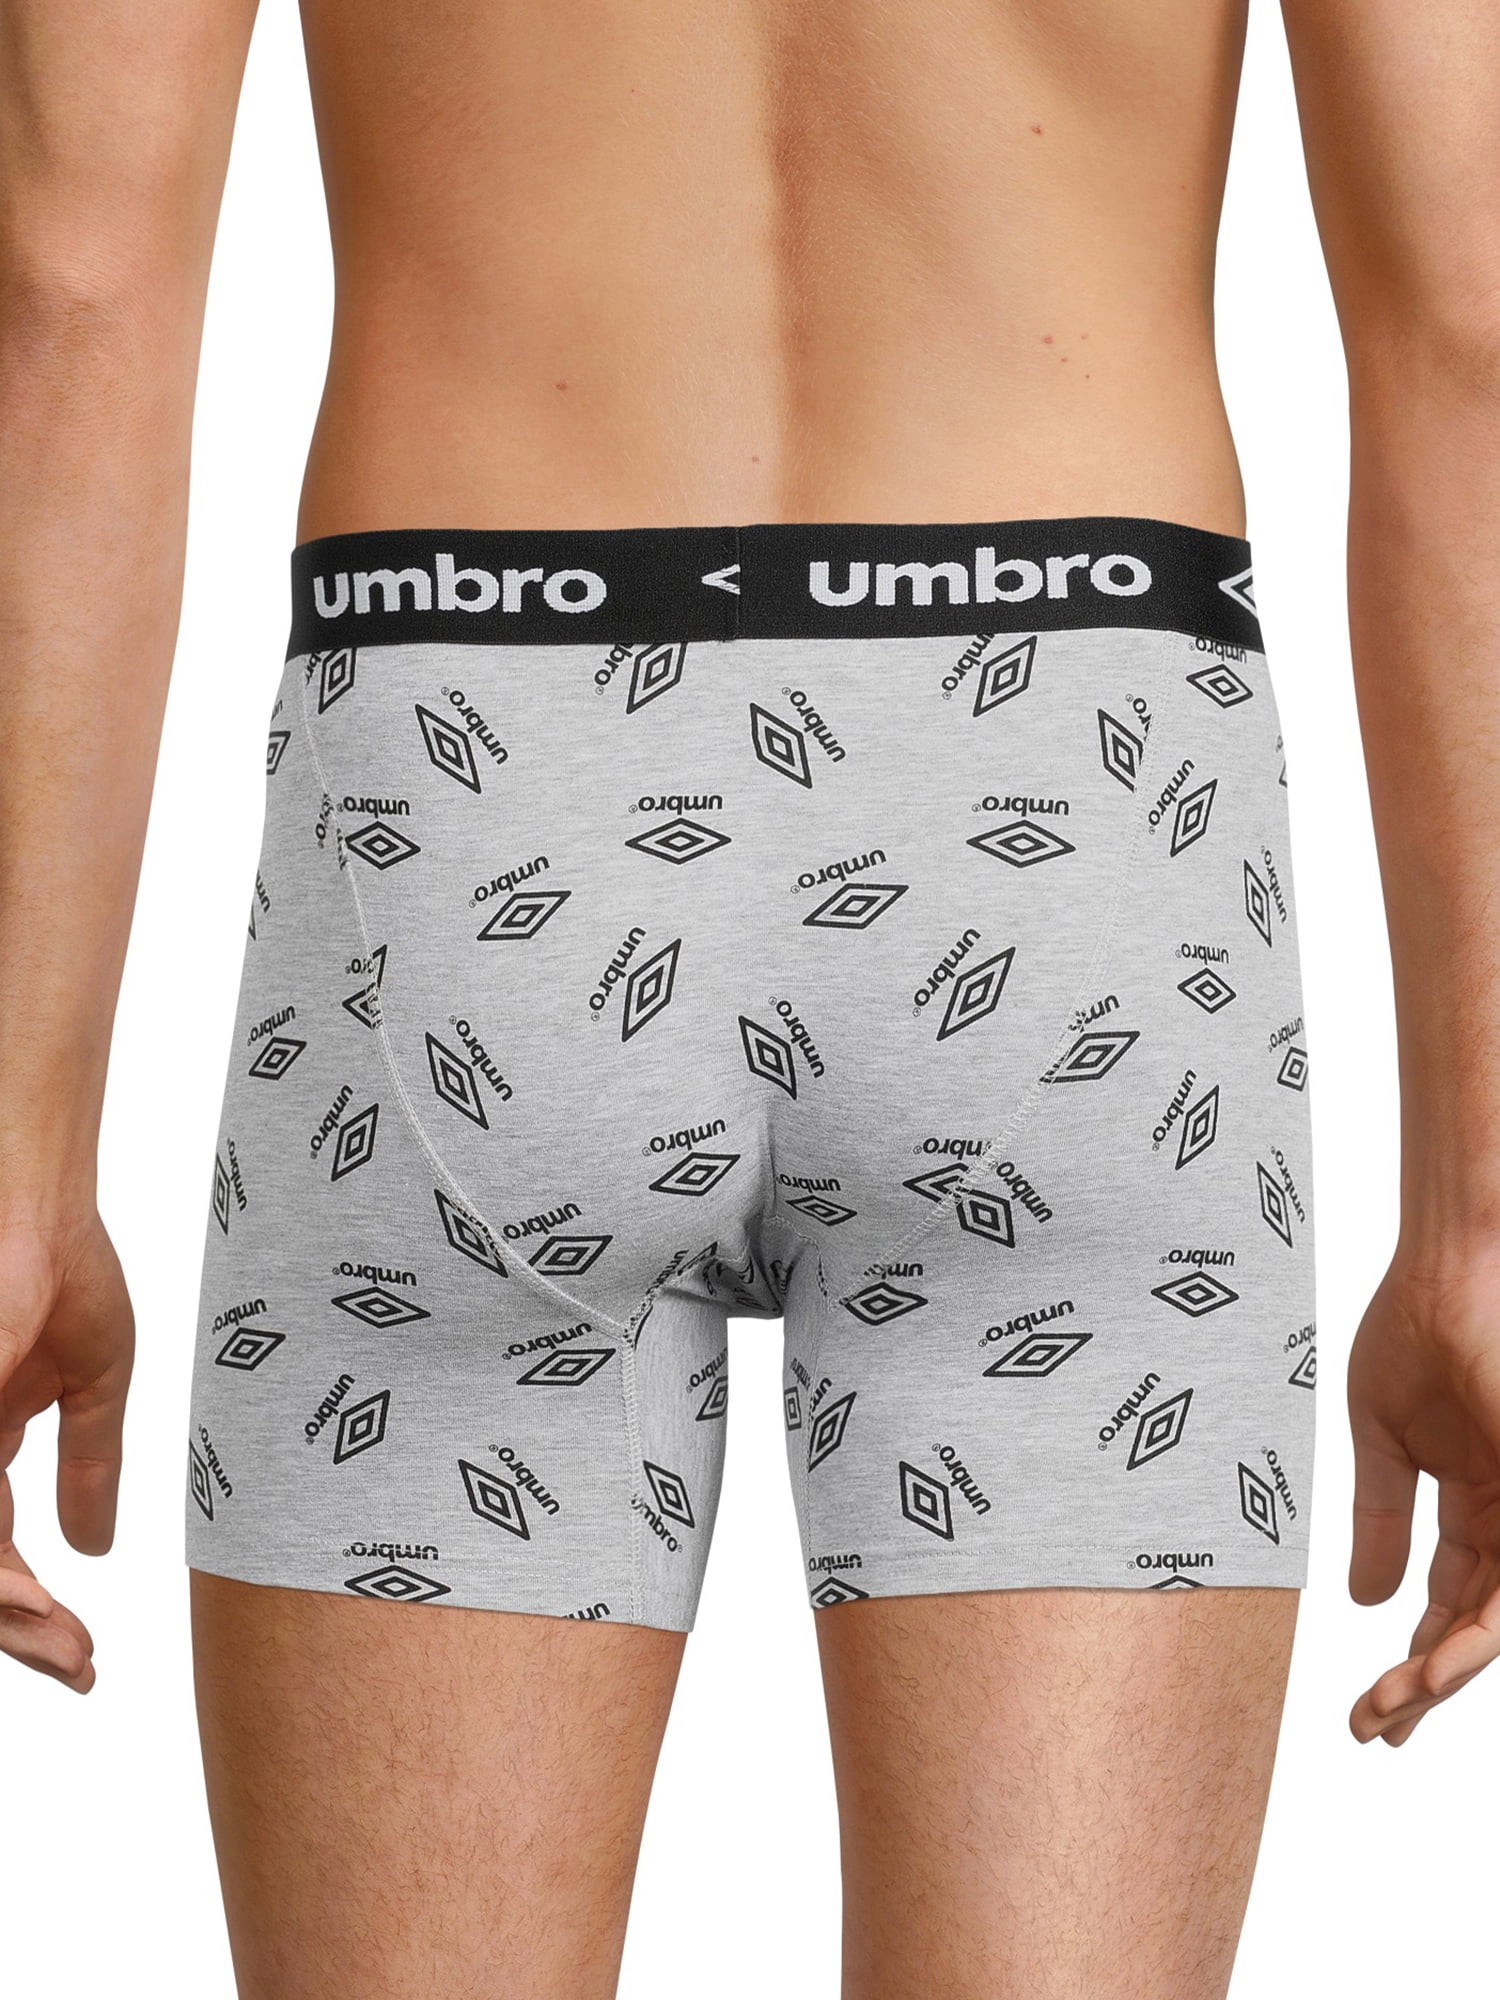 Umbro Womens White - Adult Core Briefs 5 Pack - Umbro Underwear Underwear